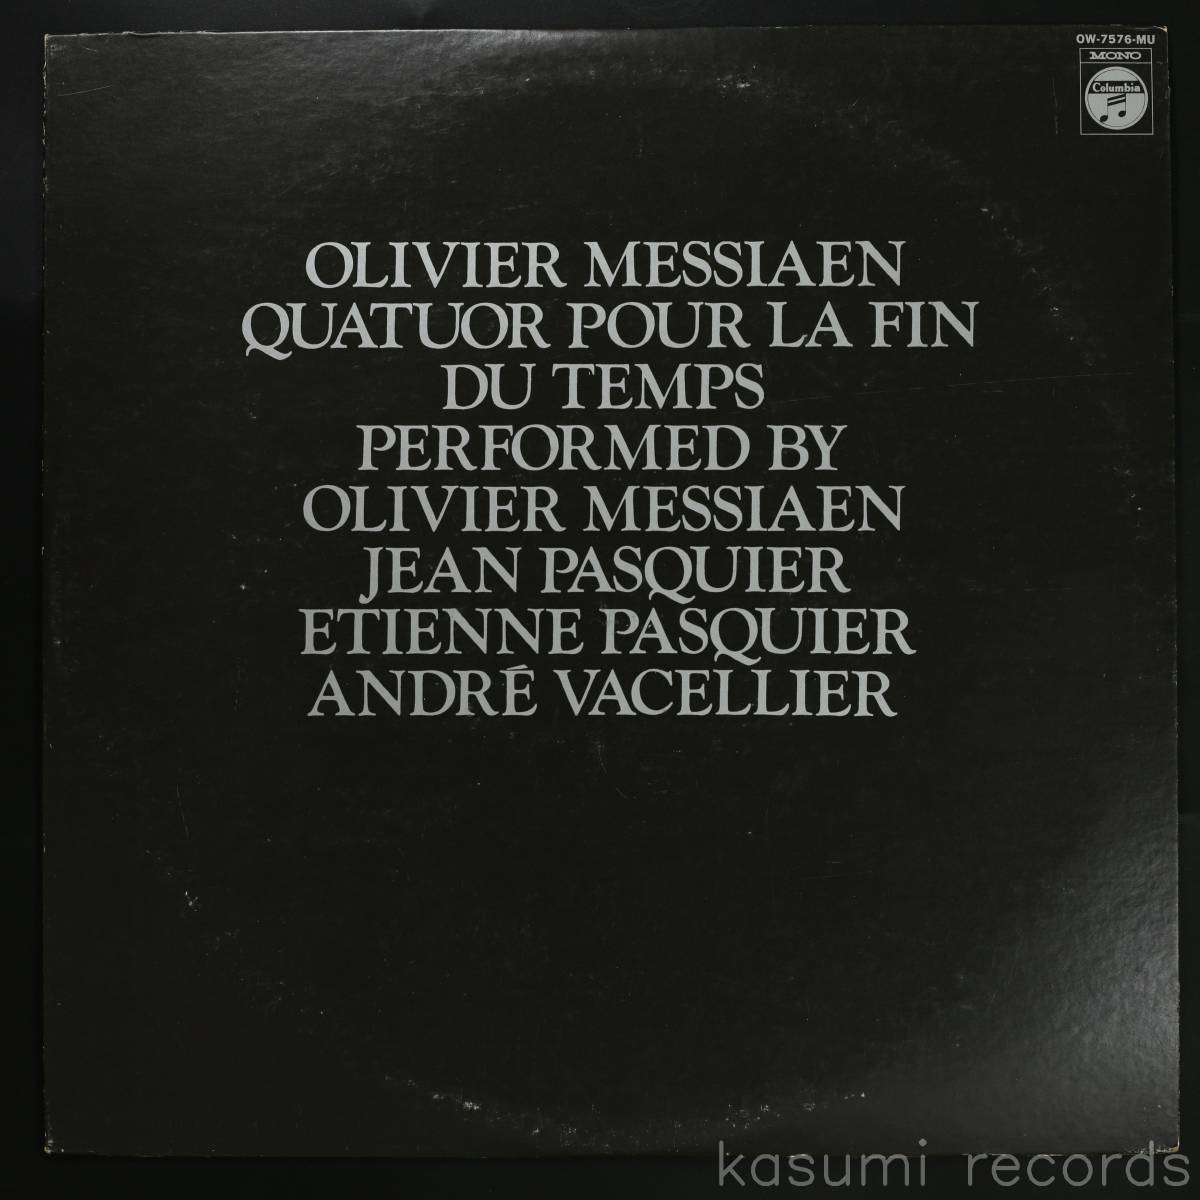 【国内盤LP】オリヴィエ・メシアン 他/メシアン:世の終りのための四重奏曲(並品,自作自演,現代音楽,Olivier Messiaen)の画像1